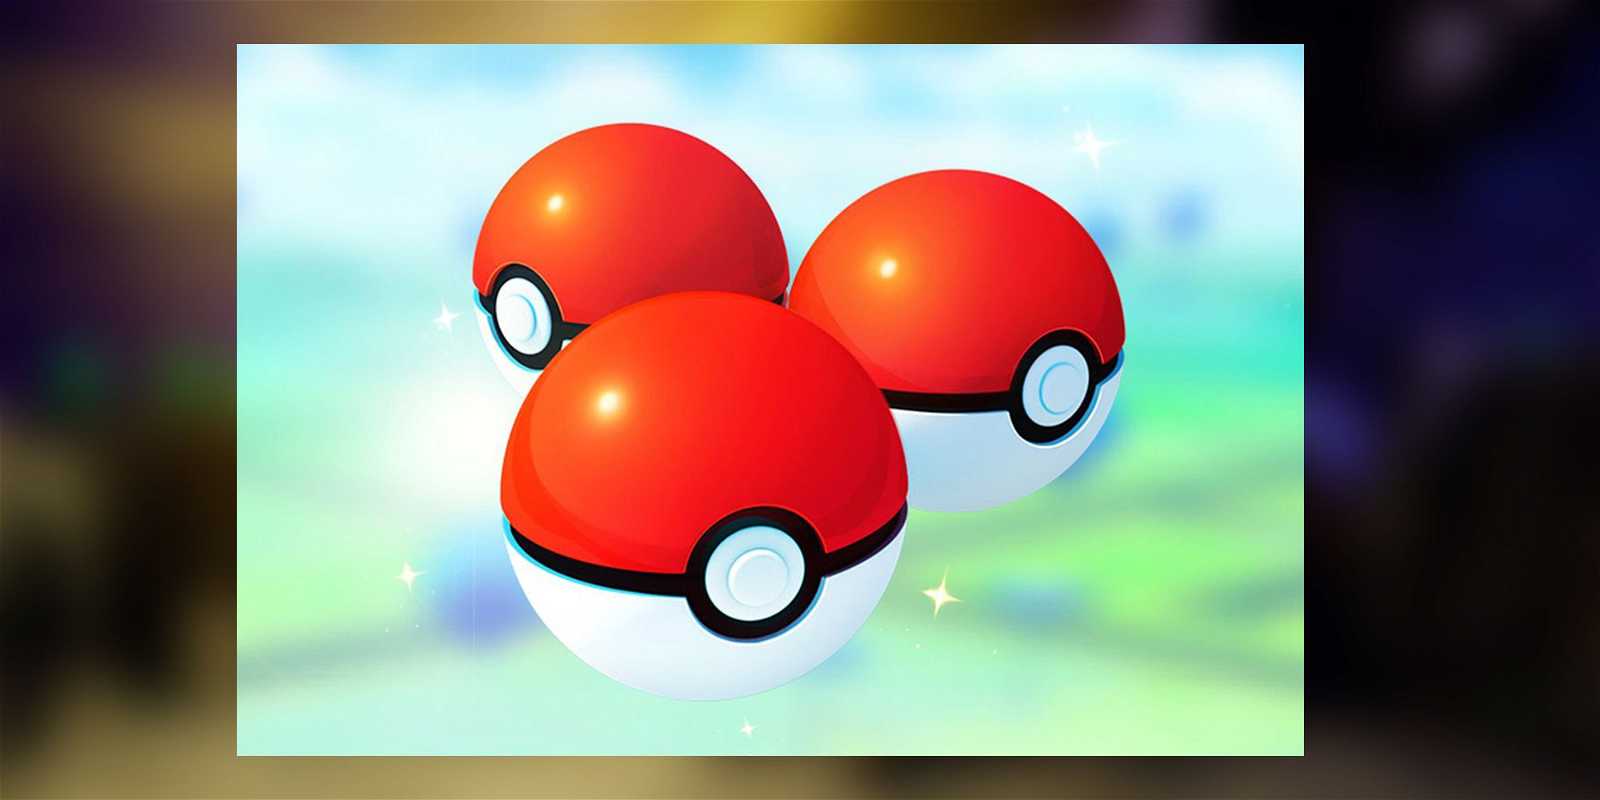 How to Get More Poké Balls in Pokémon Go